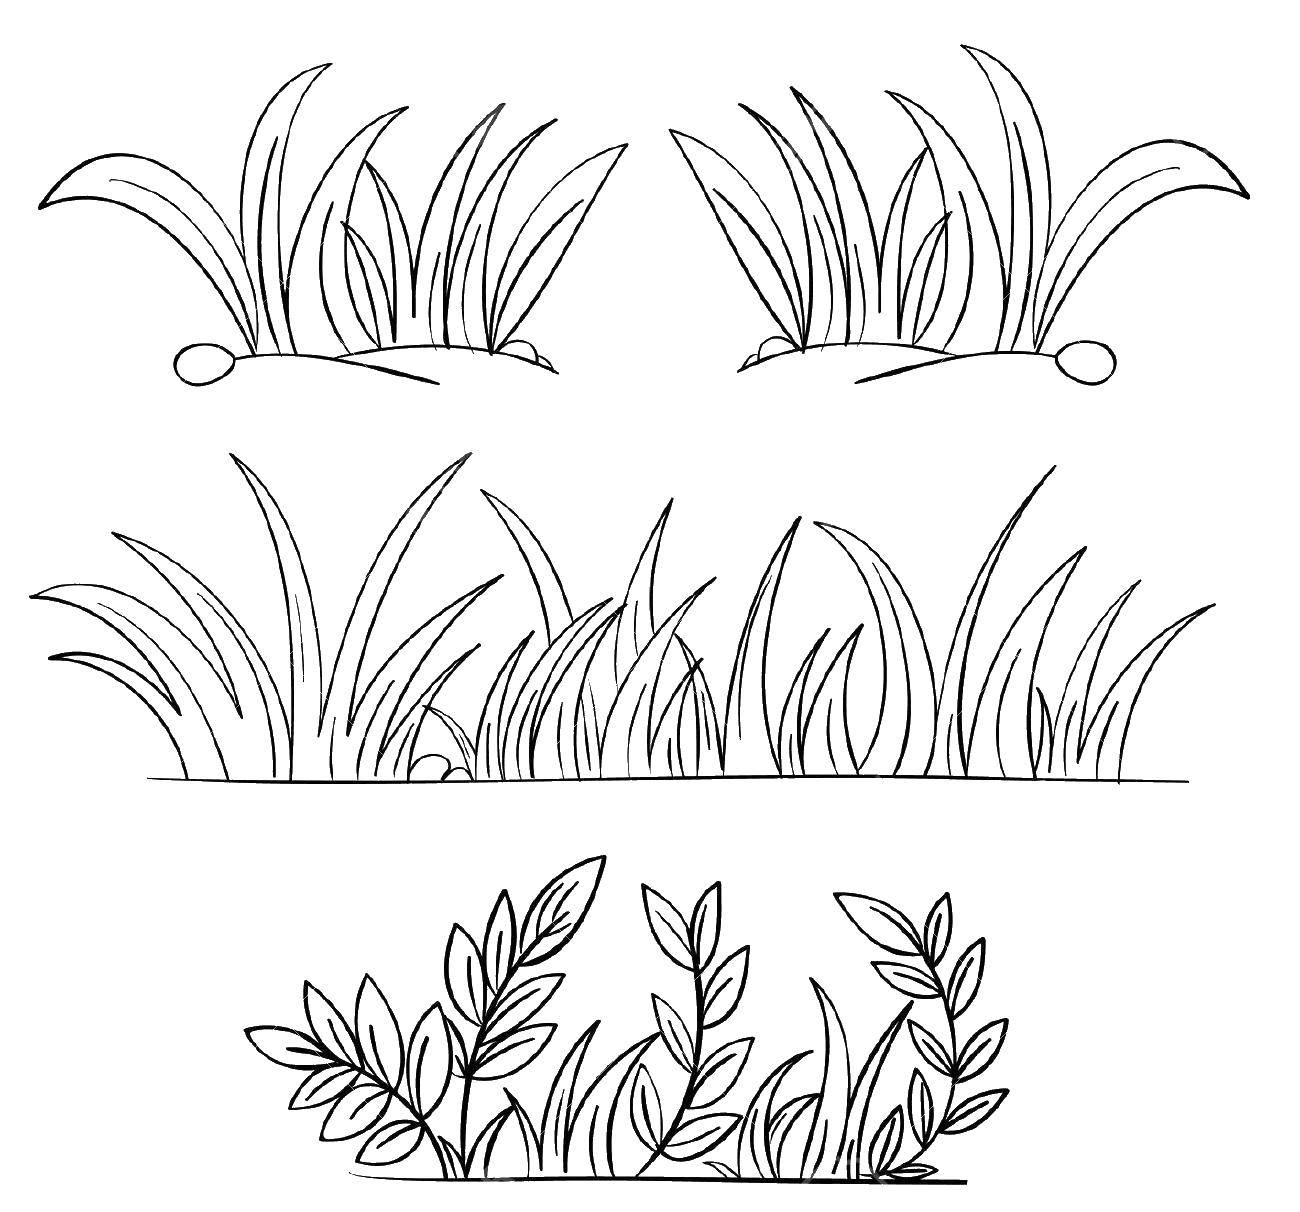 Раскраска с контурами травы для вырезания (трава, листья)